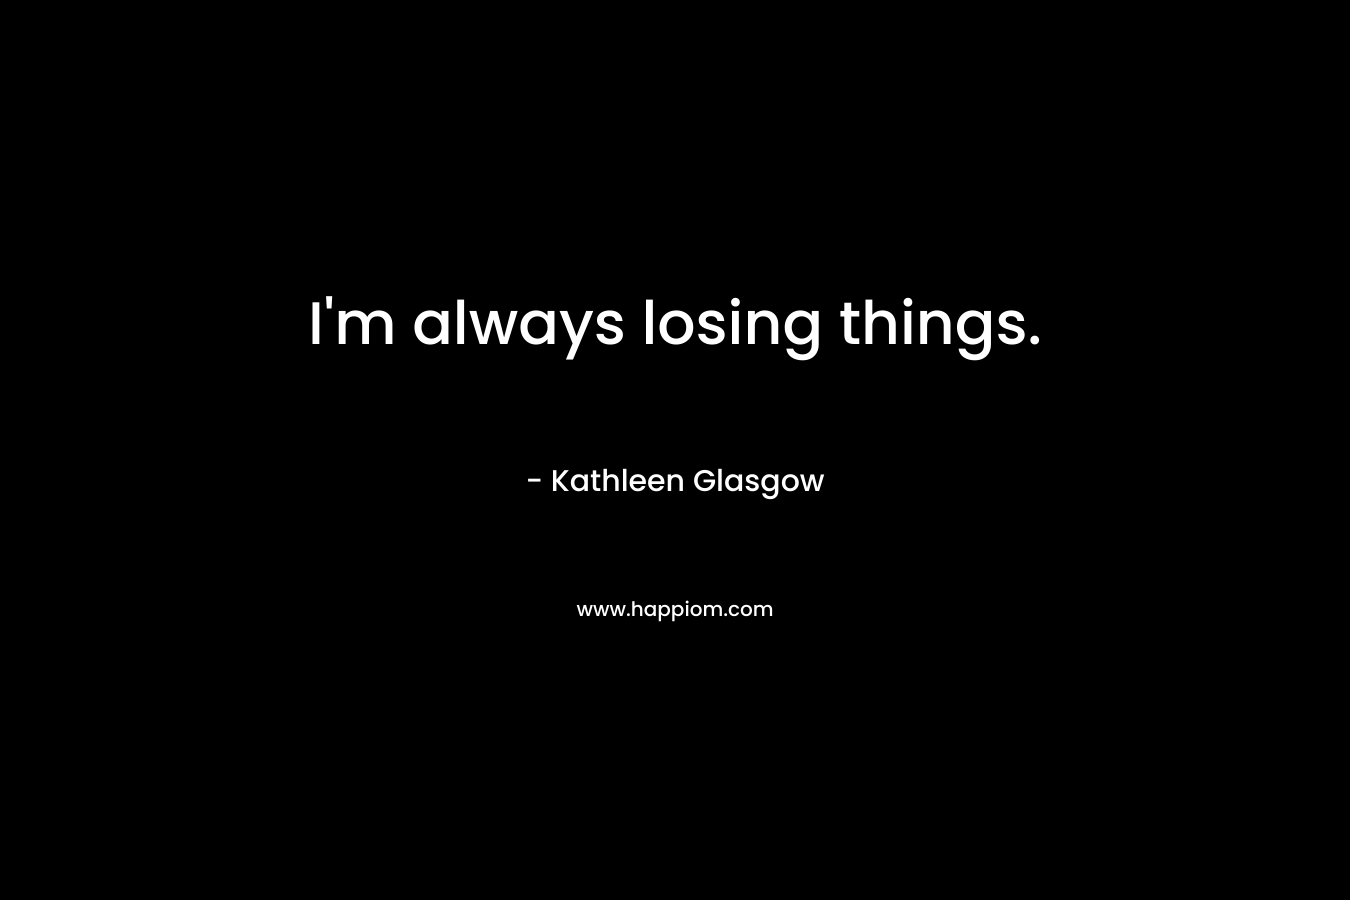 I'm always losing things.